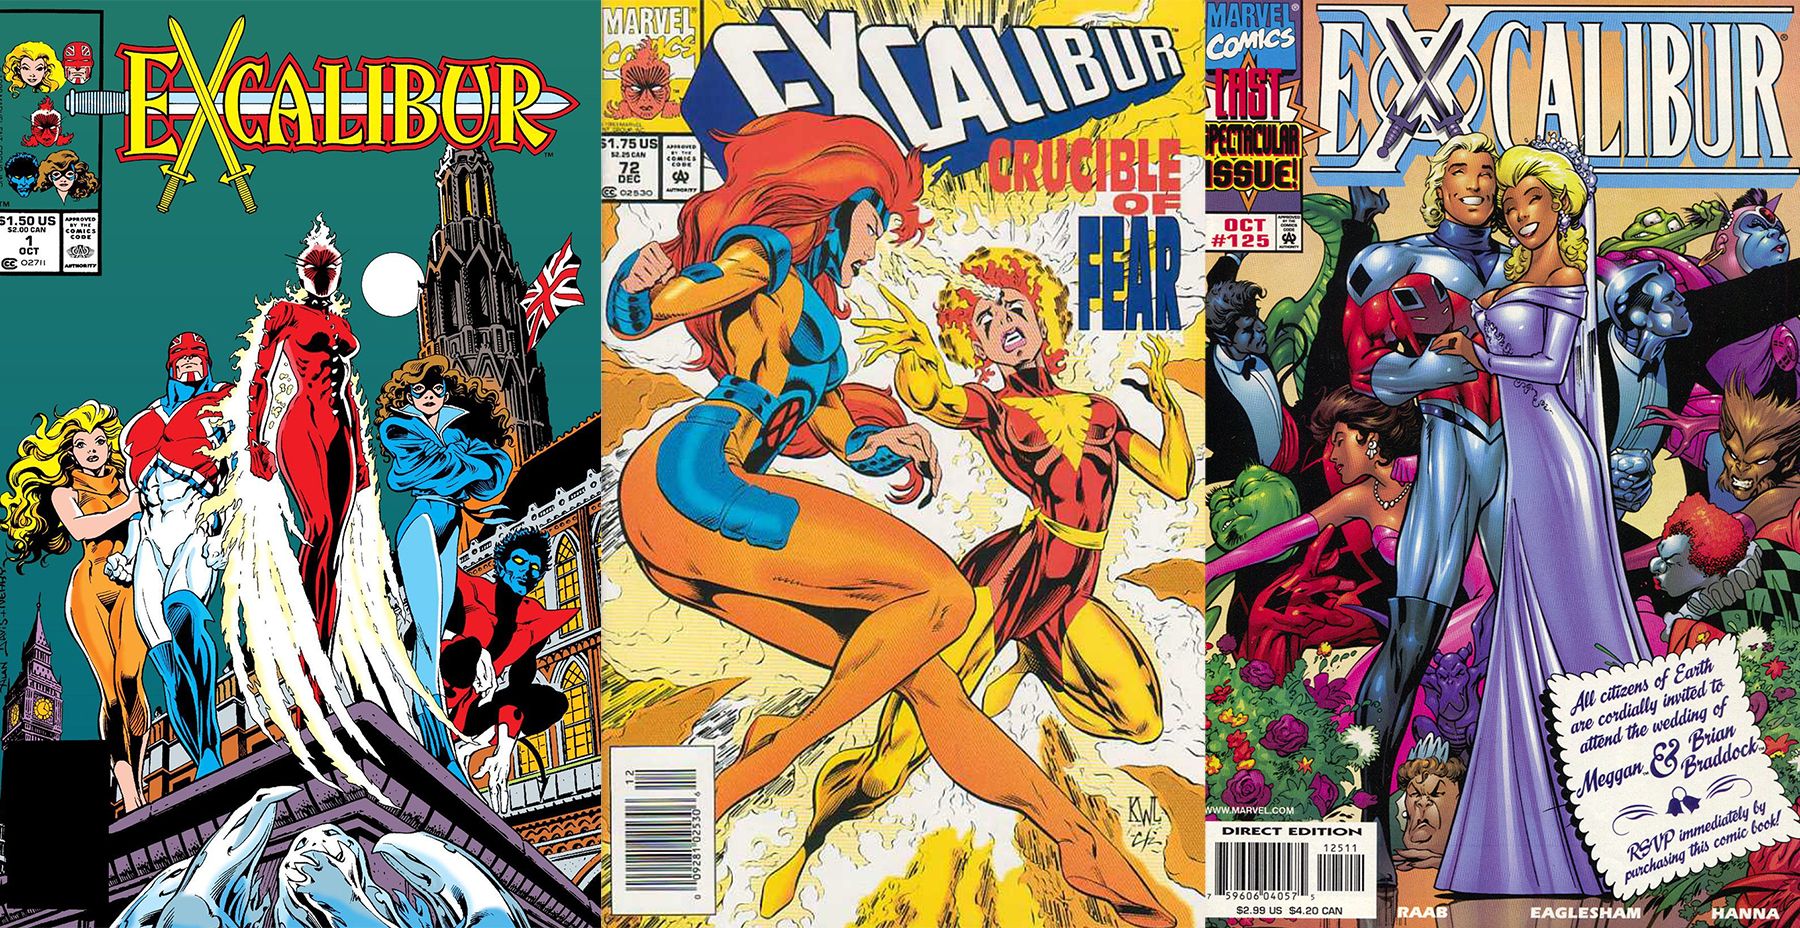 Excalibur-x-men-comics